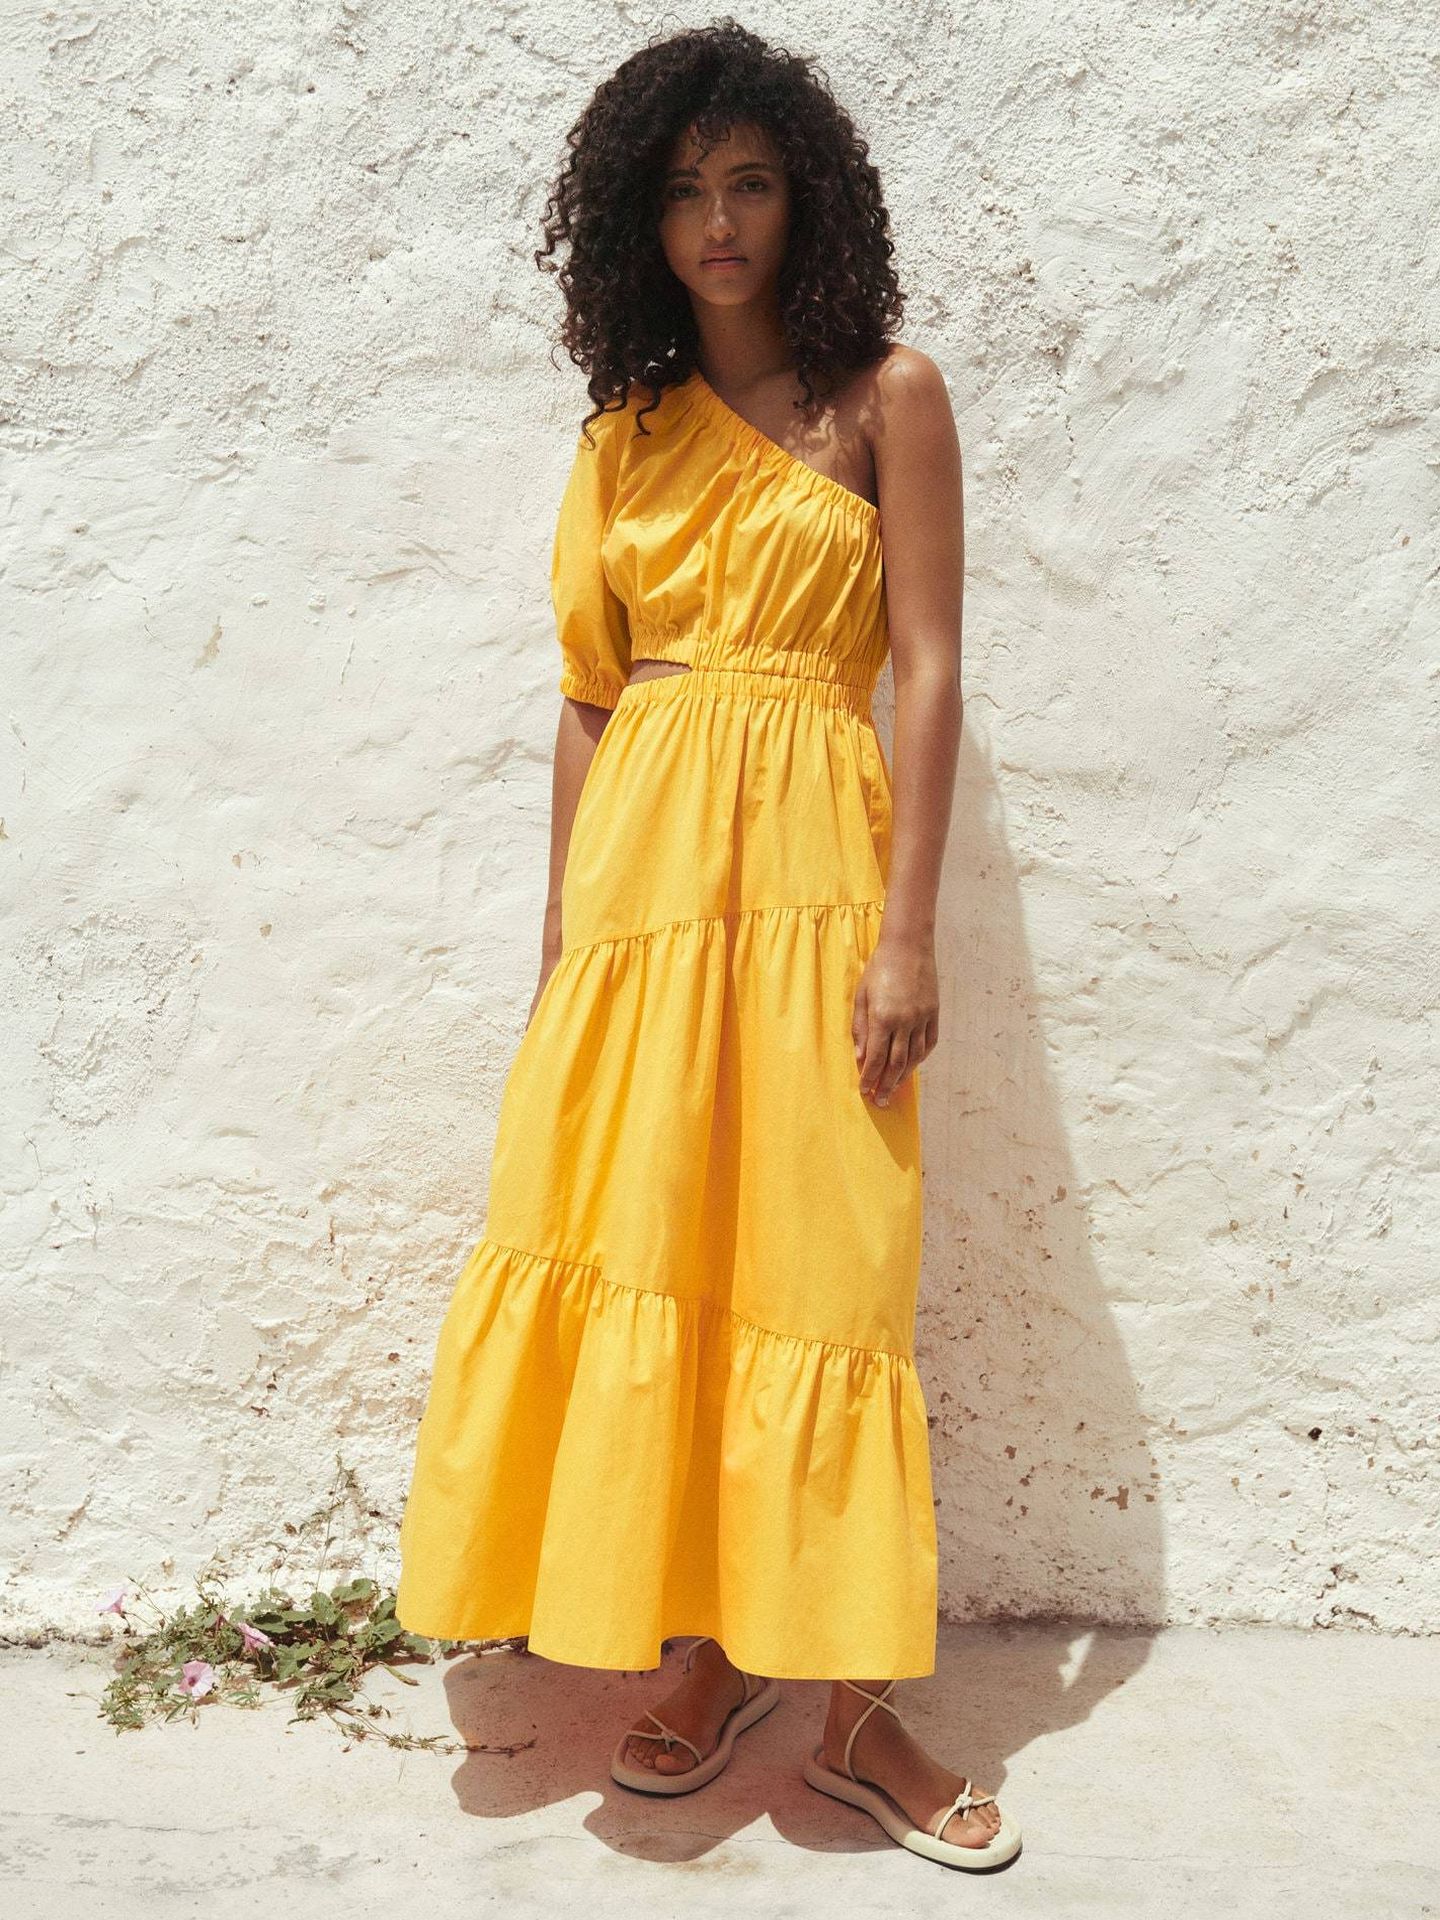 Triunfar asegurado con Mango y este vestido amarillo como el sol